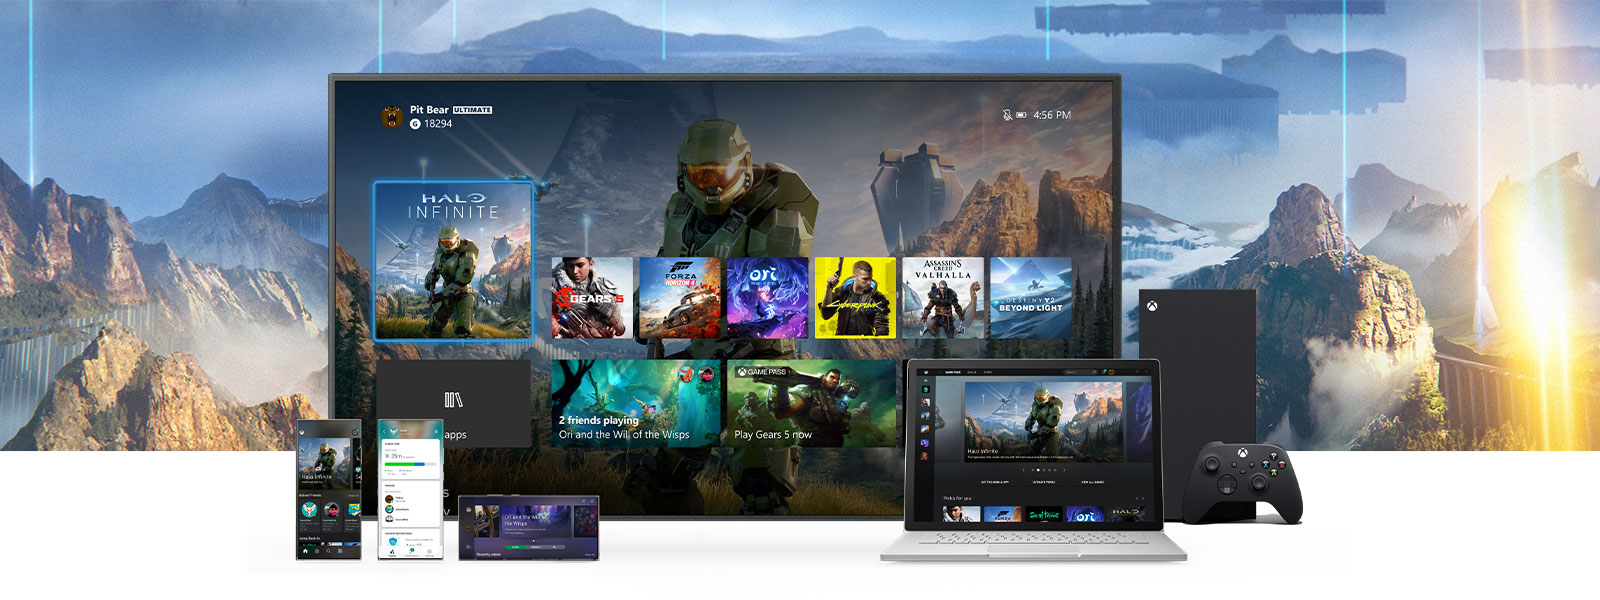 A interface Xbox apresentada numa TV junto a uma Xbox Series X. Outros dipositivos, como um PC e dispositivos móveis, encontram-se posicionados em frente à TV.